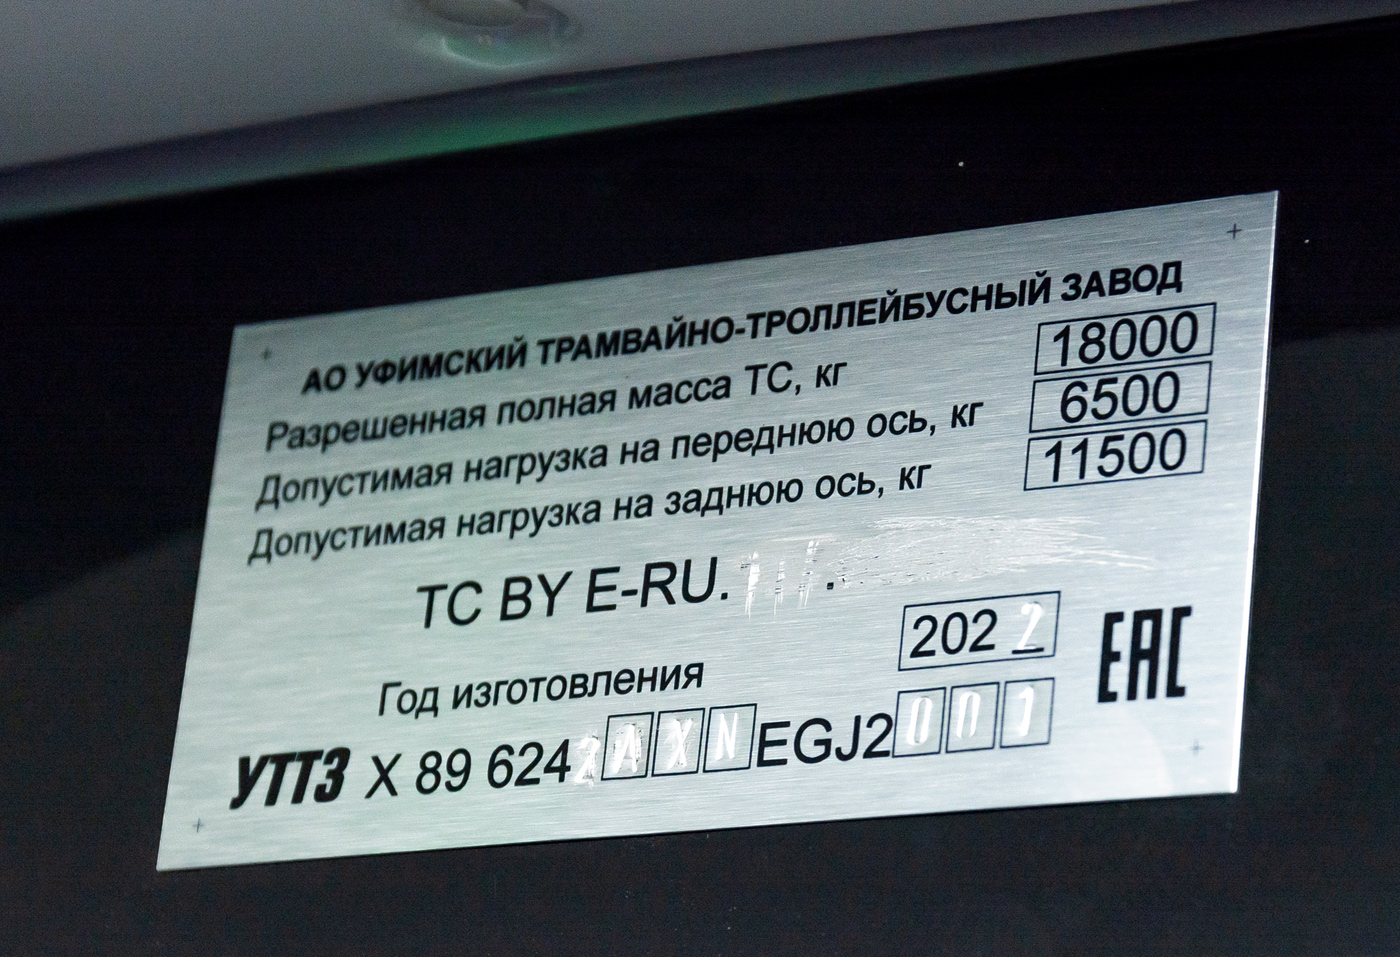 Ufa, UTTZ-6242 # 6242; Ufa — Nameplates; Ufa — New BTZ trolleybuses